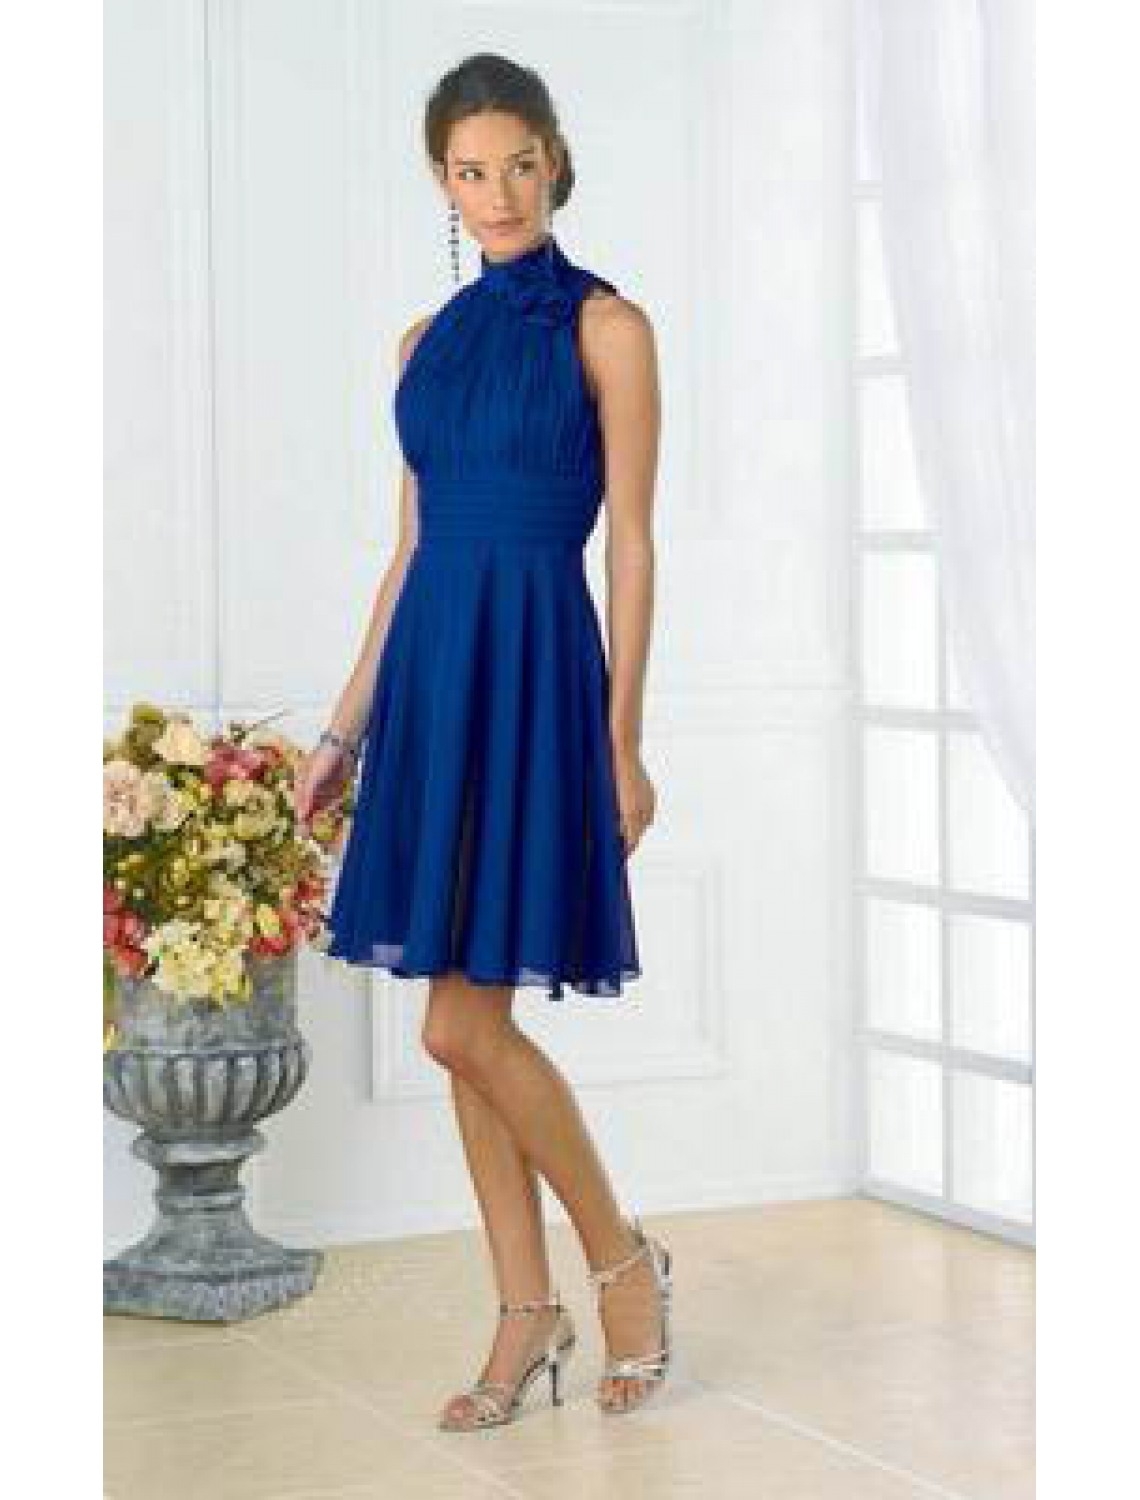 Abend Ausgezeichnet Blaues Kleid Hochzeitsgast Vertrieb17 Coolste Blaues Kleid Hochzeitsgast Spezialgebiet